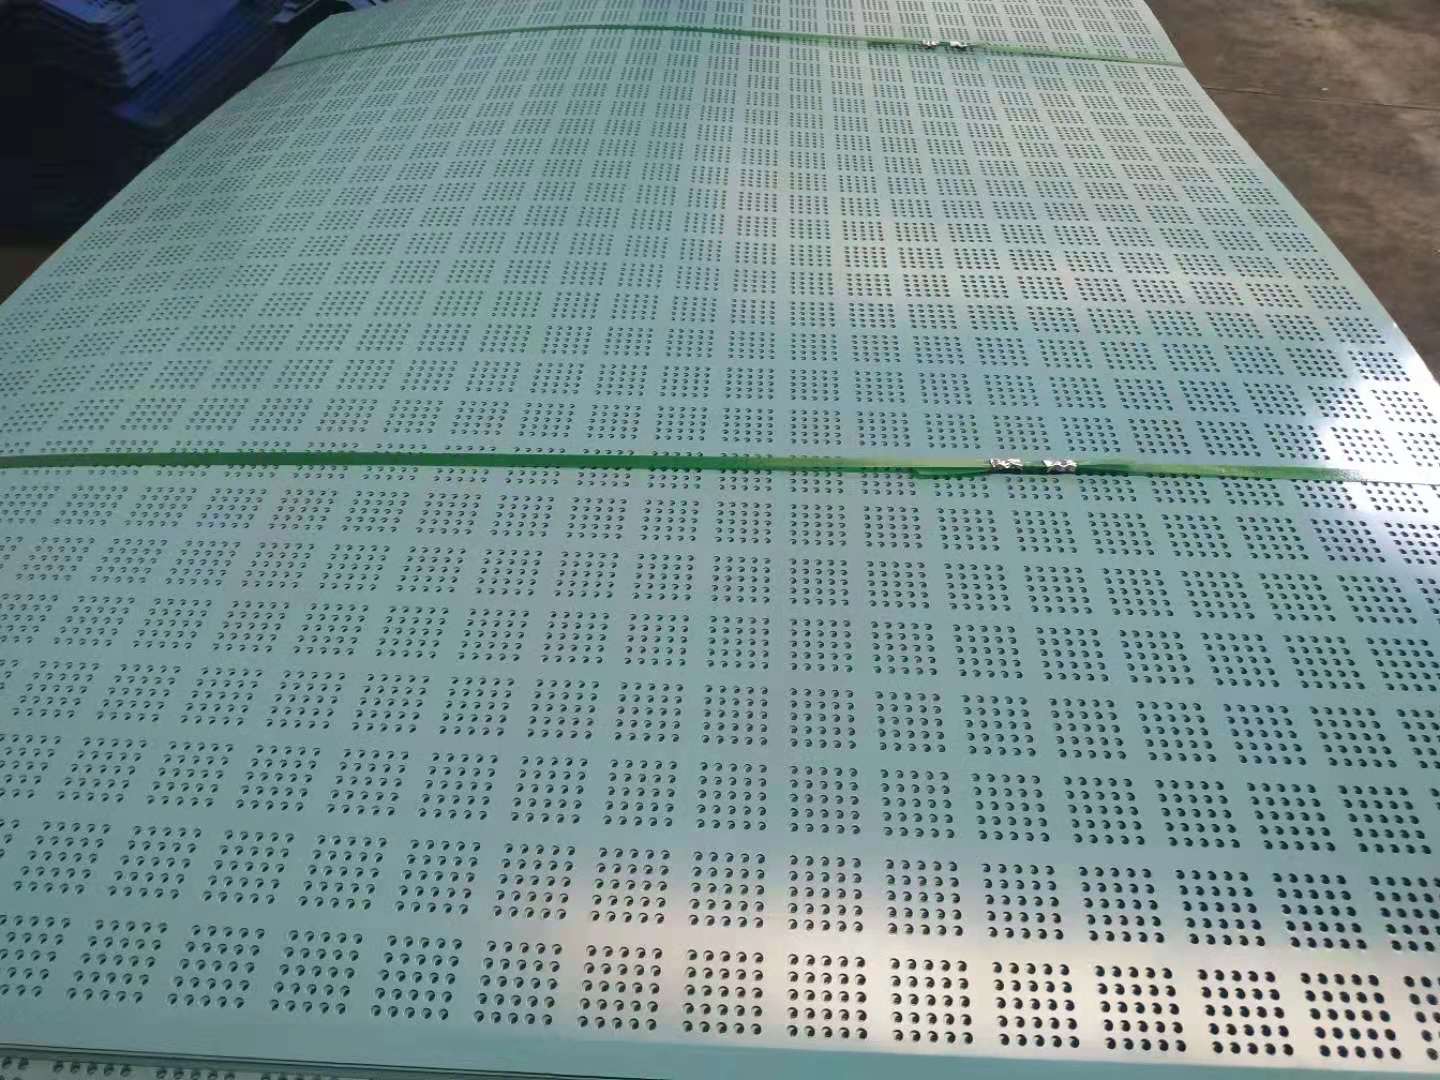 河南郑州 蔡跃公司 钢制安全网 蓝色爬架 价格美丽